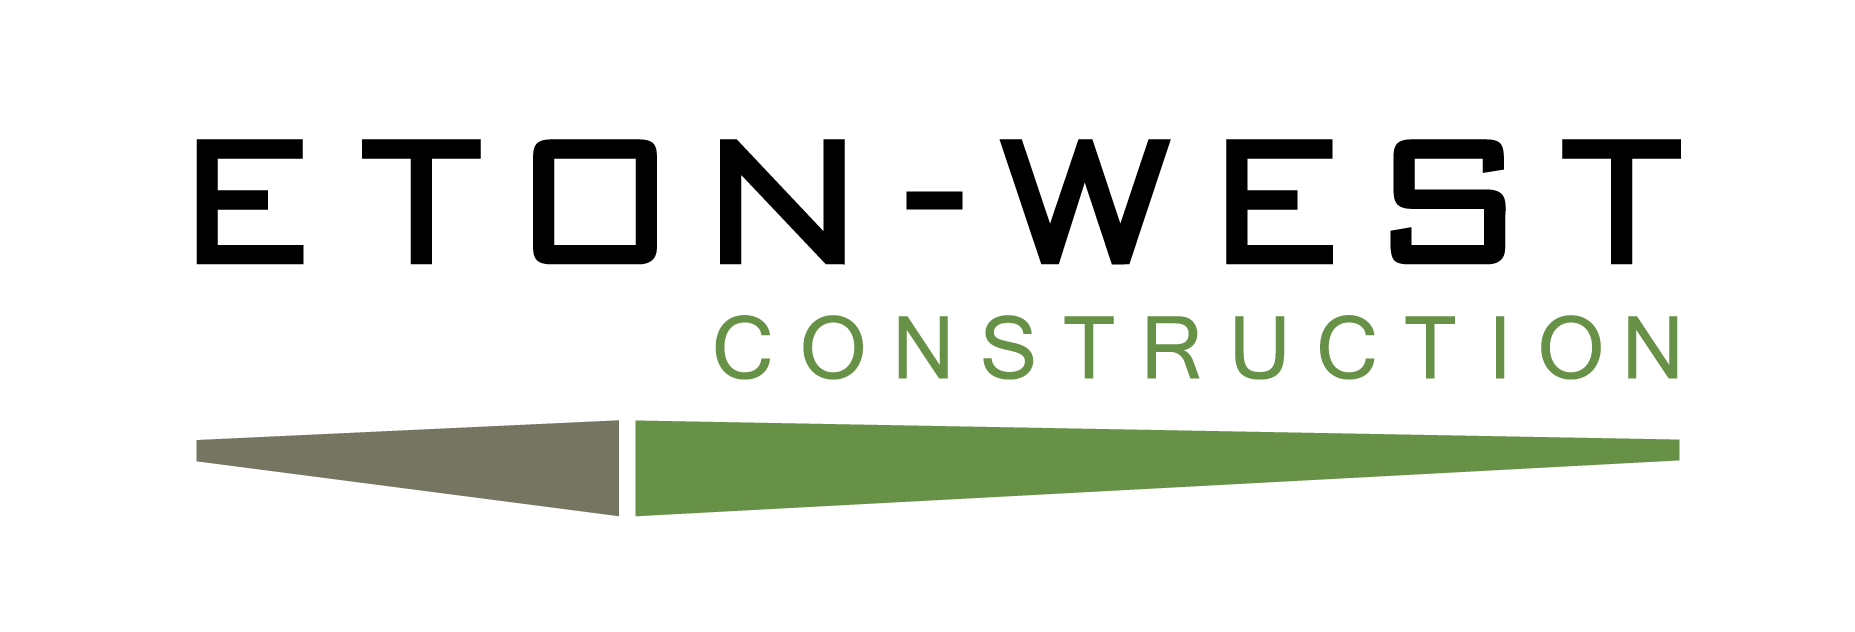 eton-west-construction-logo-colour.png